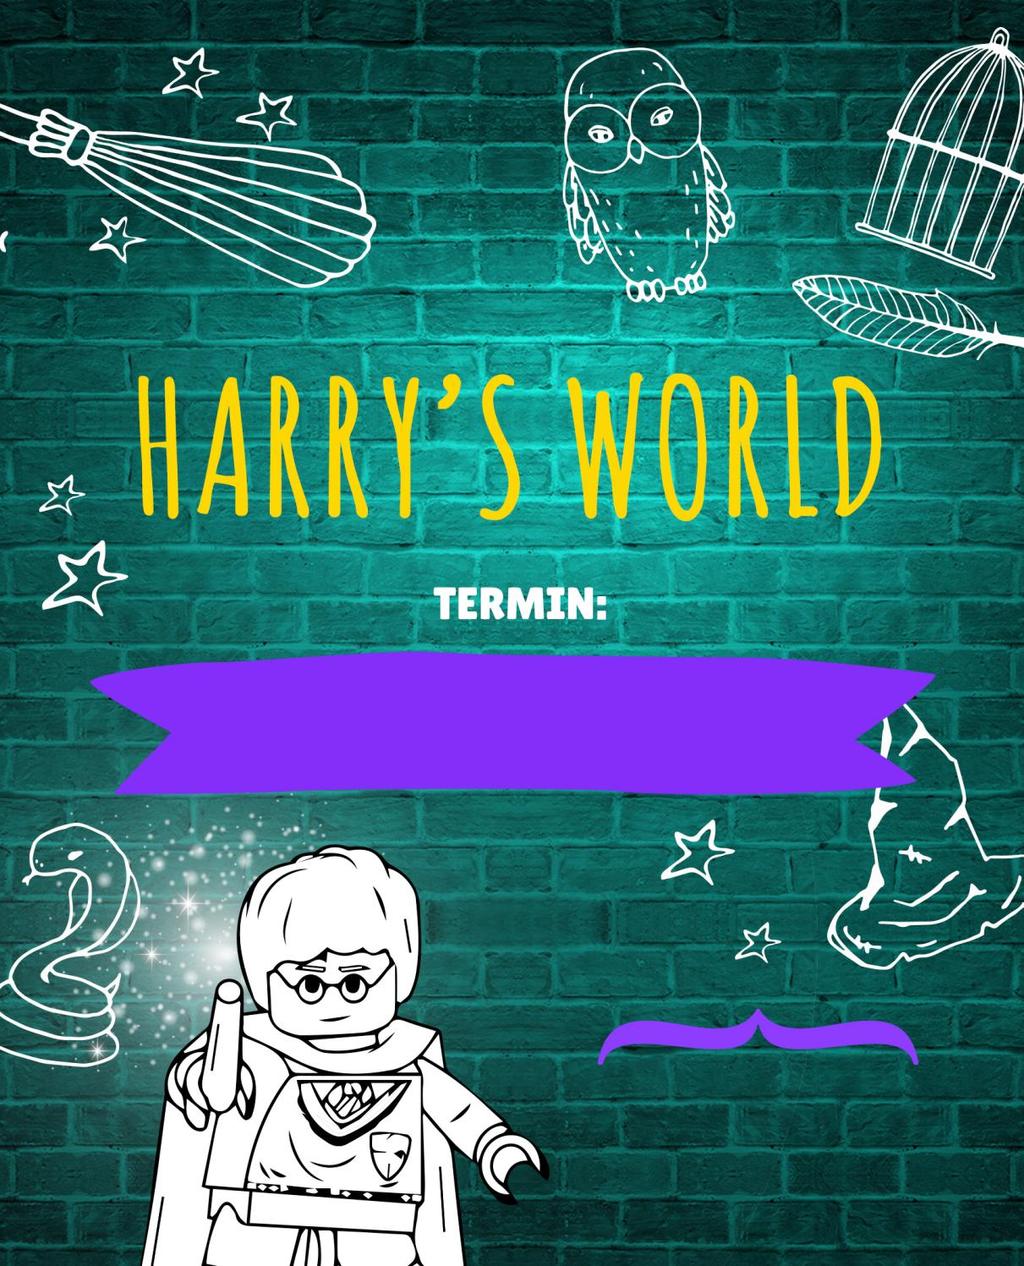 HARRY S WORLD [nowość] W tym roku Twoje dziecko poczuje się na półkolonii jak w HOGWARCIE. Wyjątkowa przygoda w klimacie uwielbianego bohatera książek, filmów - Harrego Pottera.